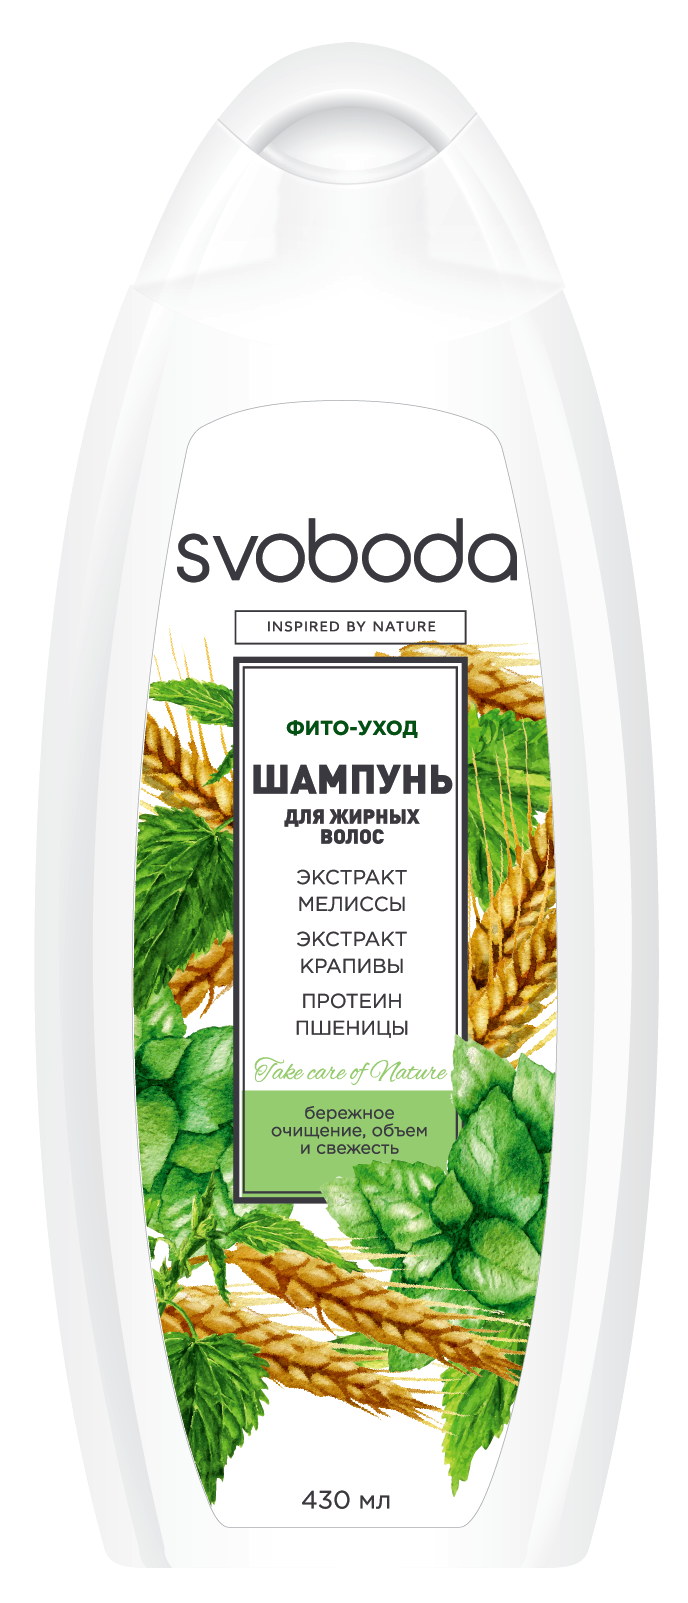 Шампунь SVOBODA для жирных волос с экстрактами мелиссы, крапивы и протеином пшеницы 430 мл